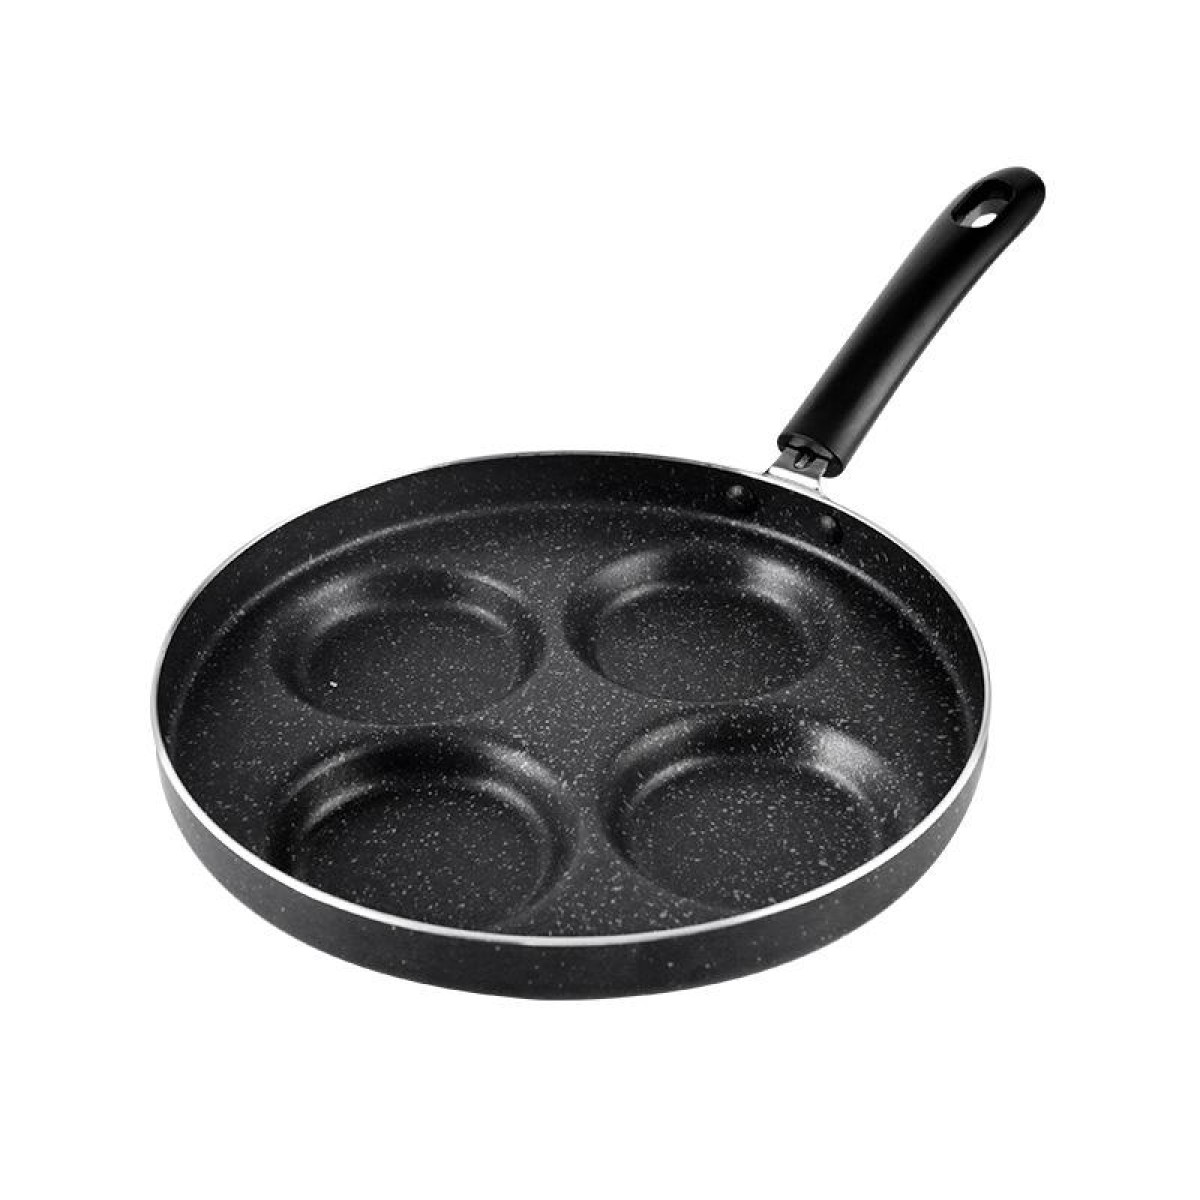 Maifan Stone Fried Egg Nonstick Pan Waffle Maker, Style: Open Fire, Diameter: 24cm (Black)